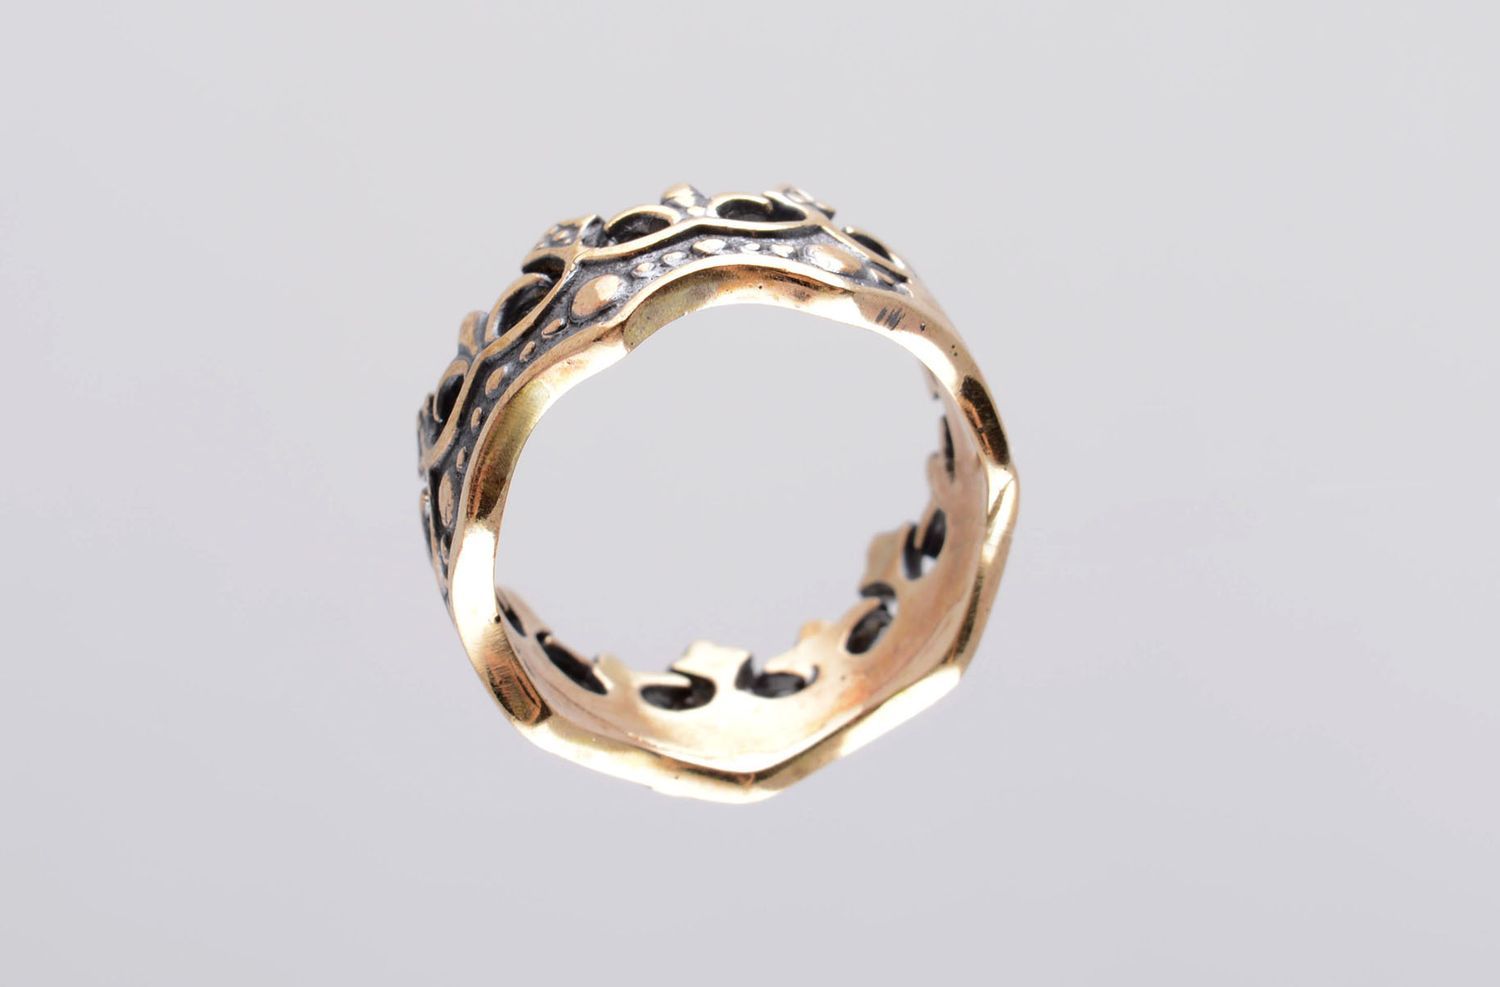 Handmade bronze ring bronze jewelry for women crown ring handmade jewelry